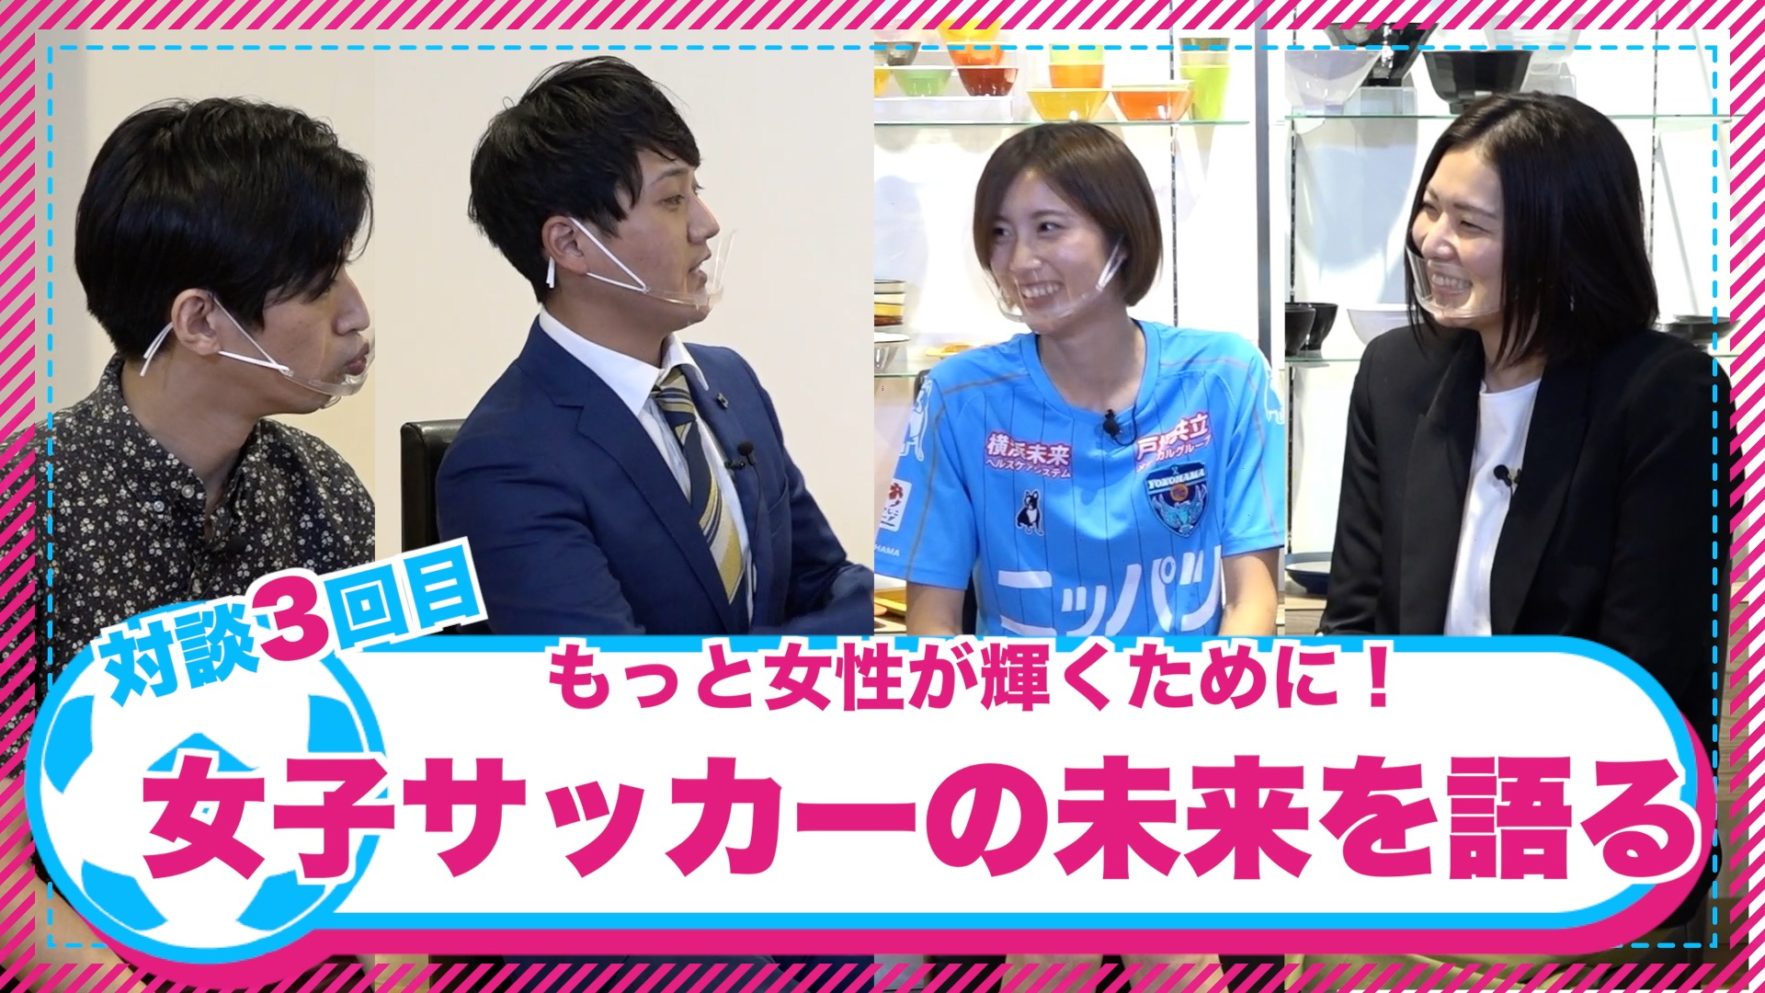 ニッパツ横浜fcシーガルズコラボ番組 もっと 女性が輝くために 第3回を配信 Onodera Group